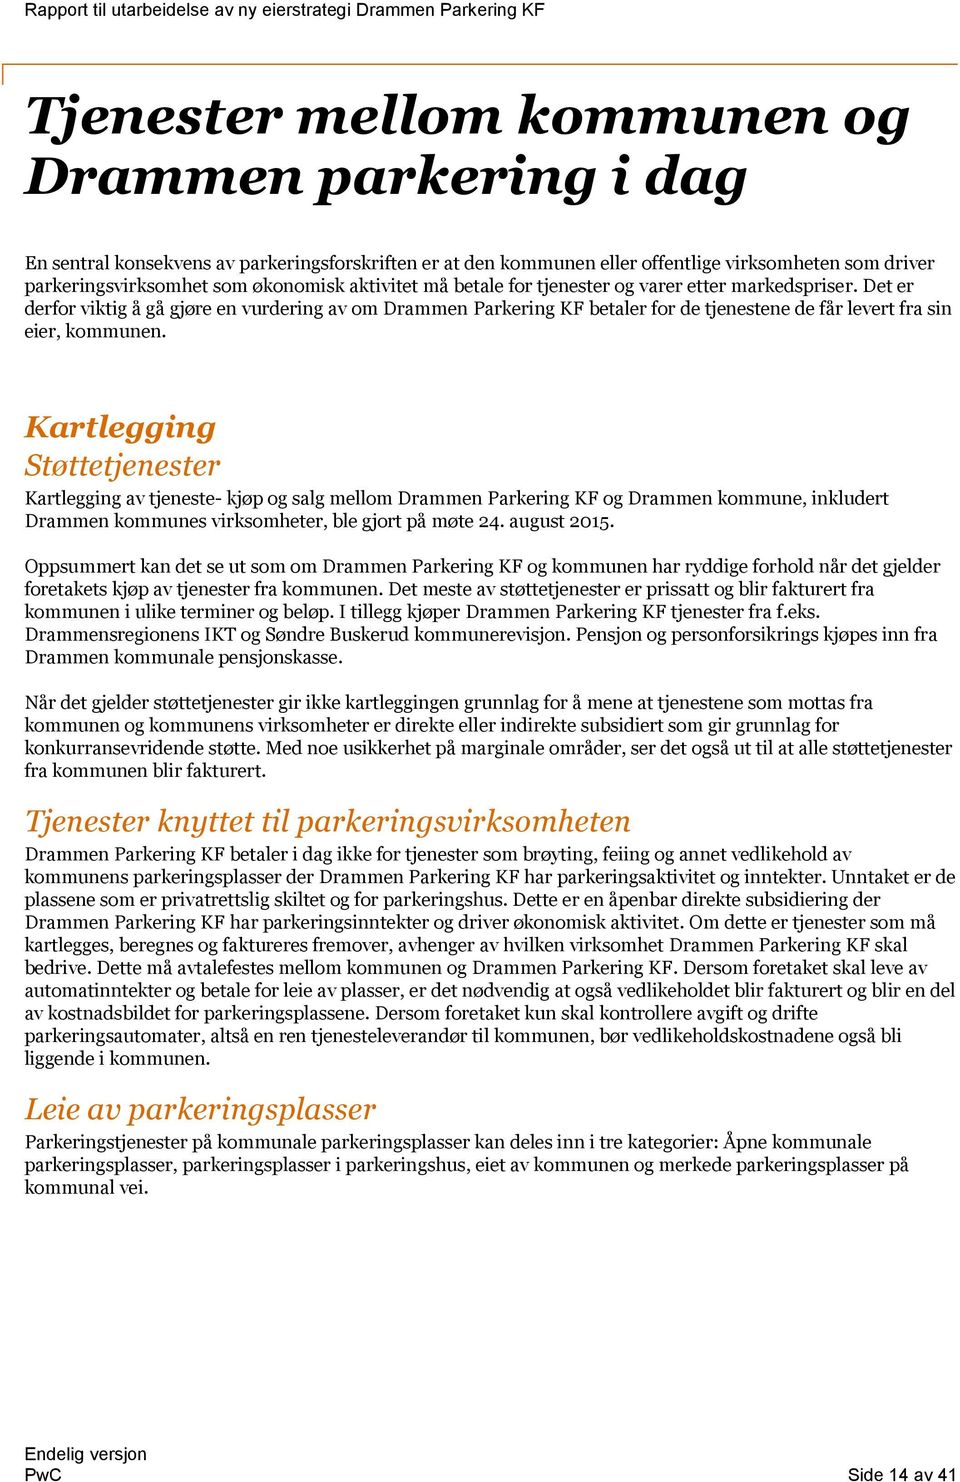 Kartlegging Støttetjenester Kartlegging av tjeneste- kjøp og salg mellom Drammen Parkering KF og Drammen kommune, inkludert Drammen kommunes virksomheter, ble gjort på møte 24. august 2015.